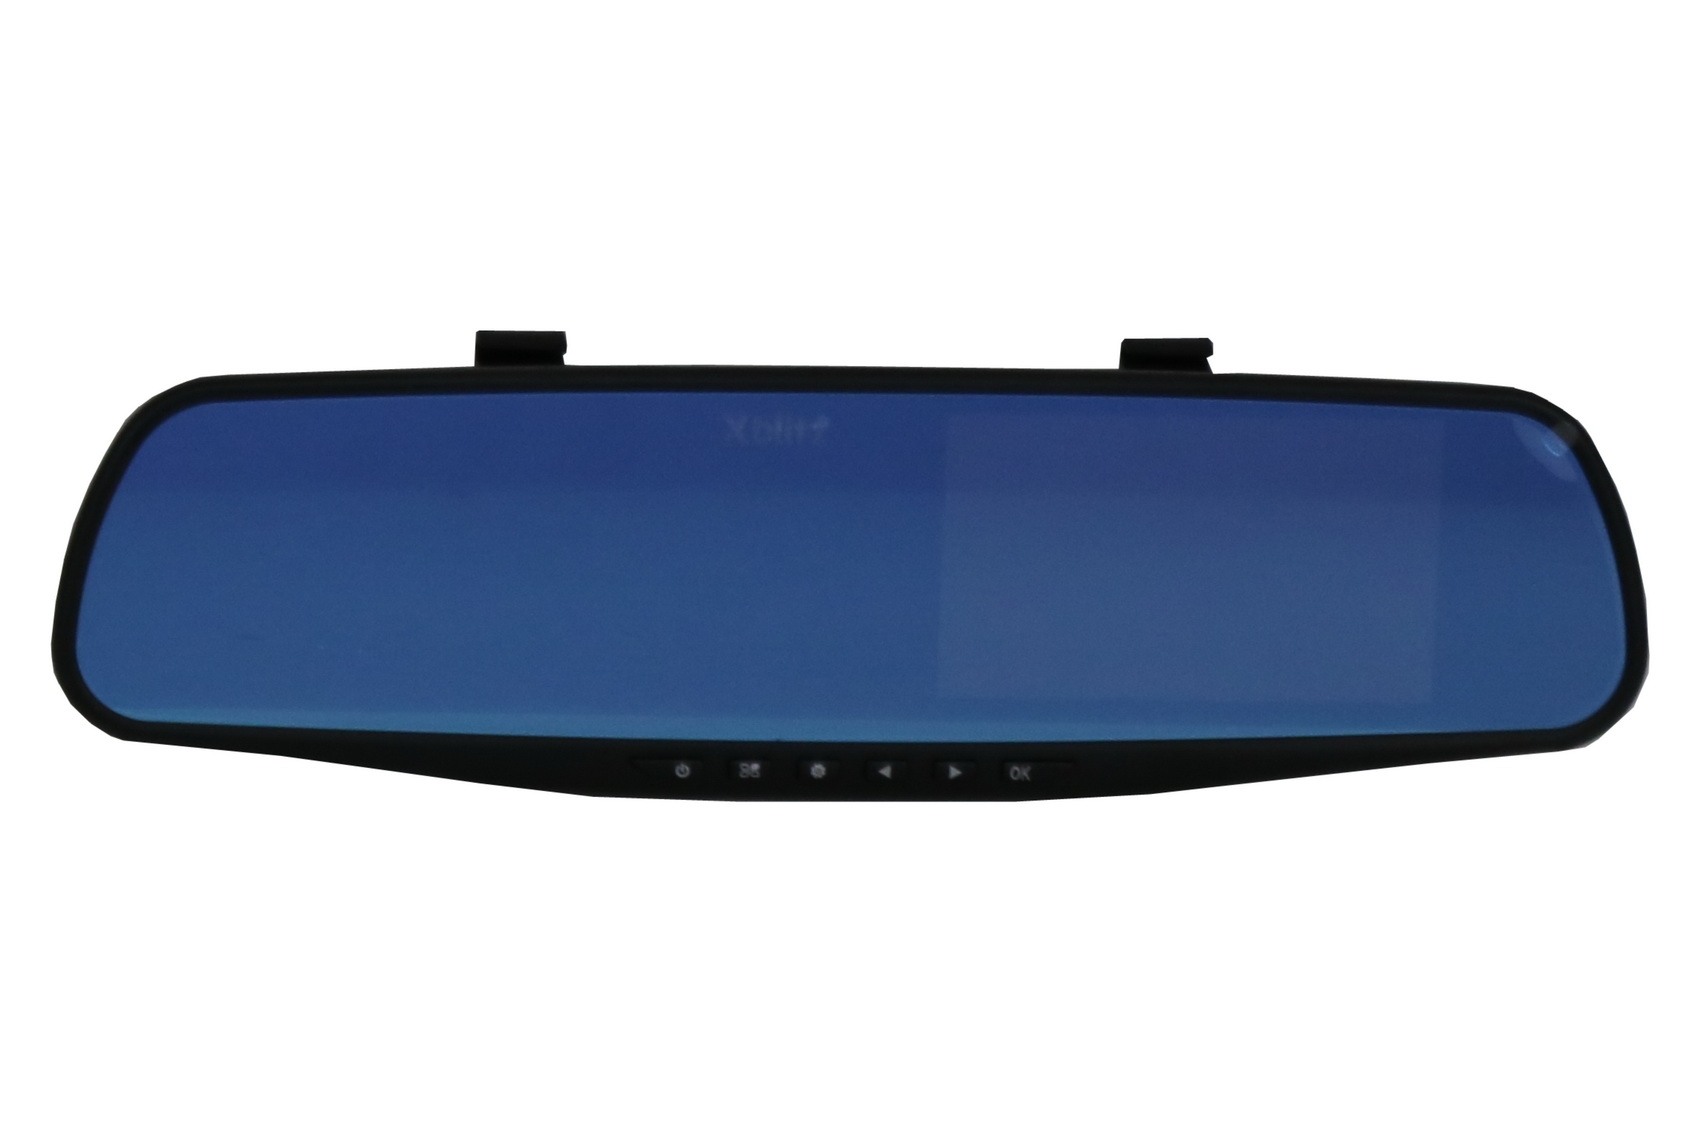 Xblitz Mirror 2016 Dash Camera műszerfali rögzítő Full HD 1920x1080P, 4,3 hüvelykes, 140 fokos objektív, fekete